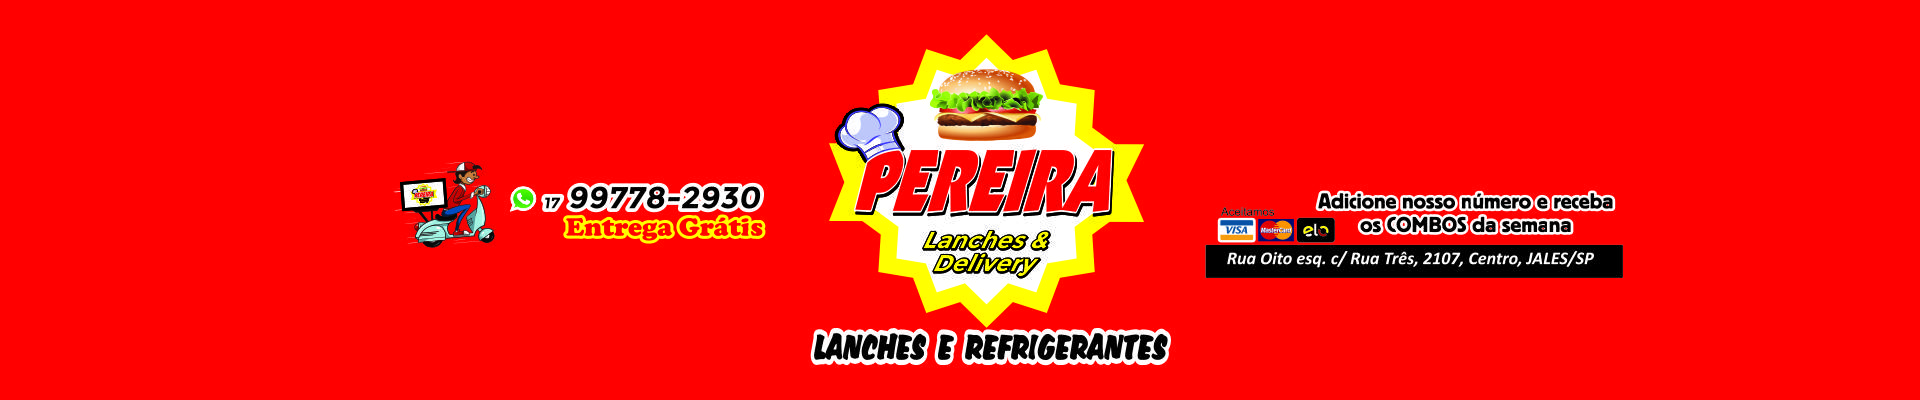 Pereira Lanches e Delivery